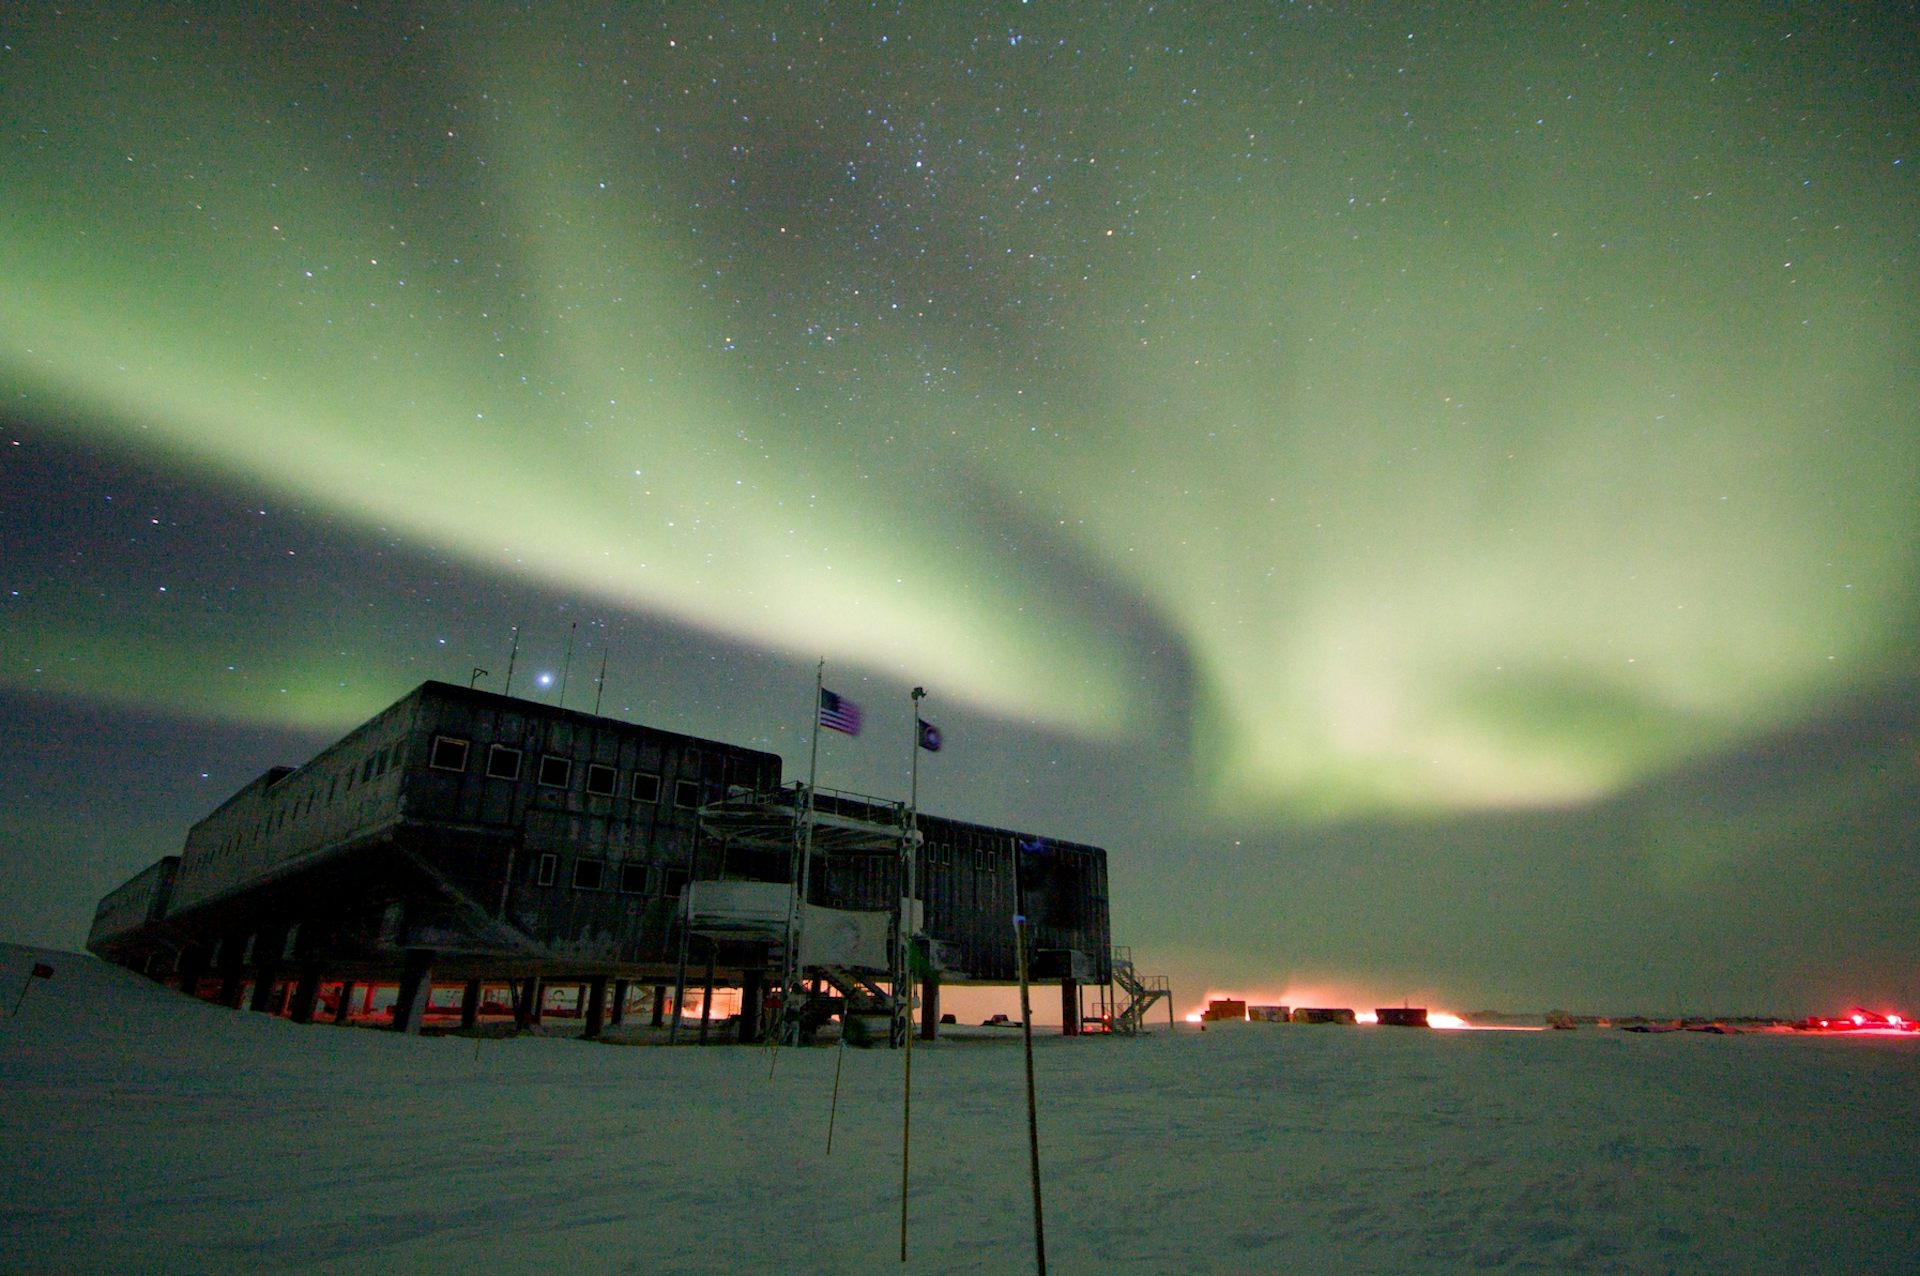 Южный полюс день и ночь. Станция Амундсен Скотт. Амундсен Скотт антарктическая станция. Американская Полярная станция Амундсен-Скотт. Американская научная станция Амундсен‑Скотт в Антарктиде.